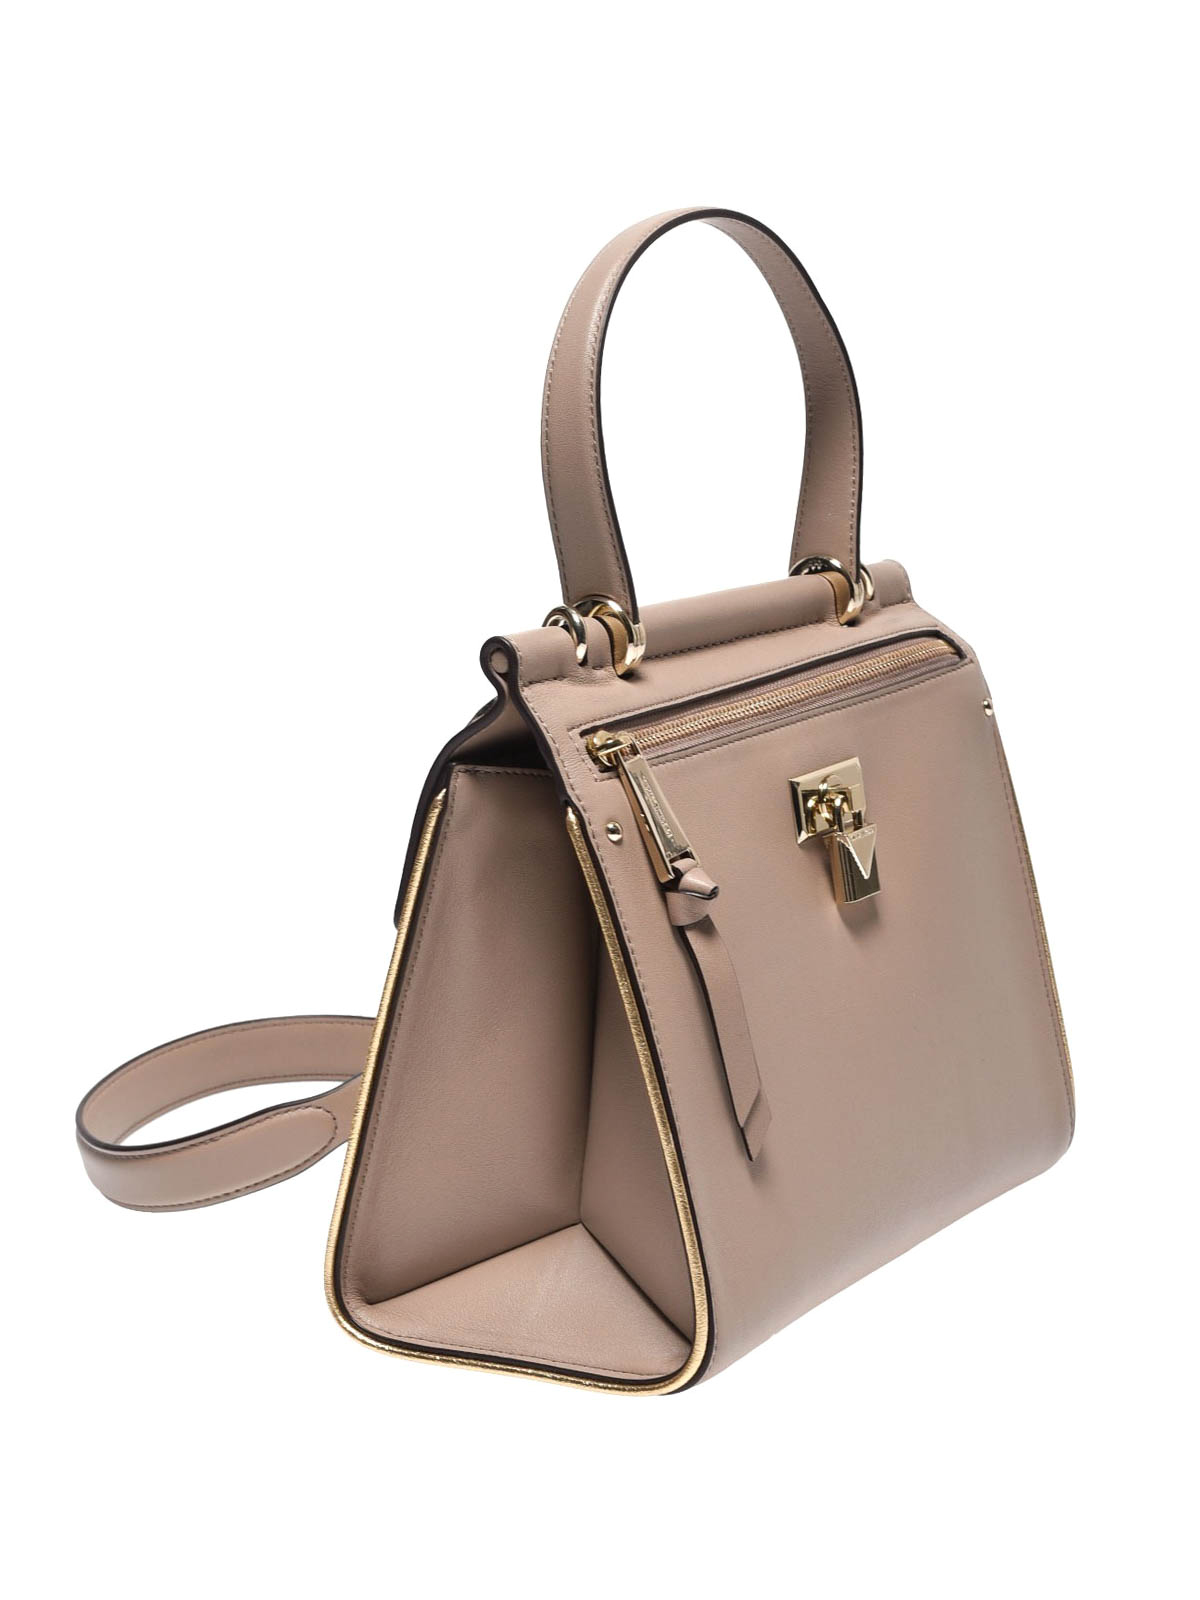 Jasmine M light beige leather handbag 